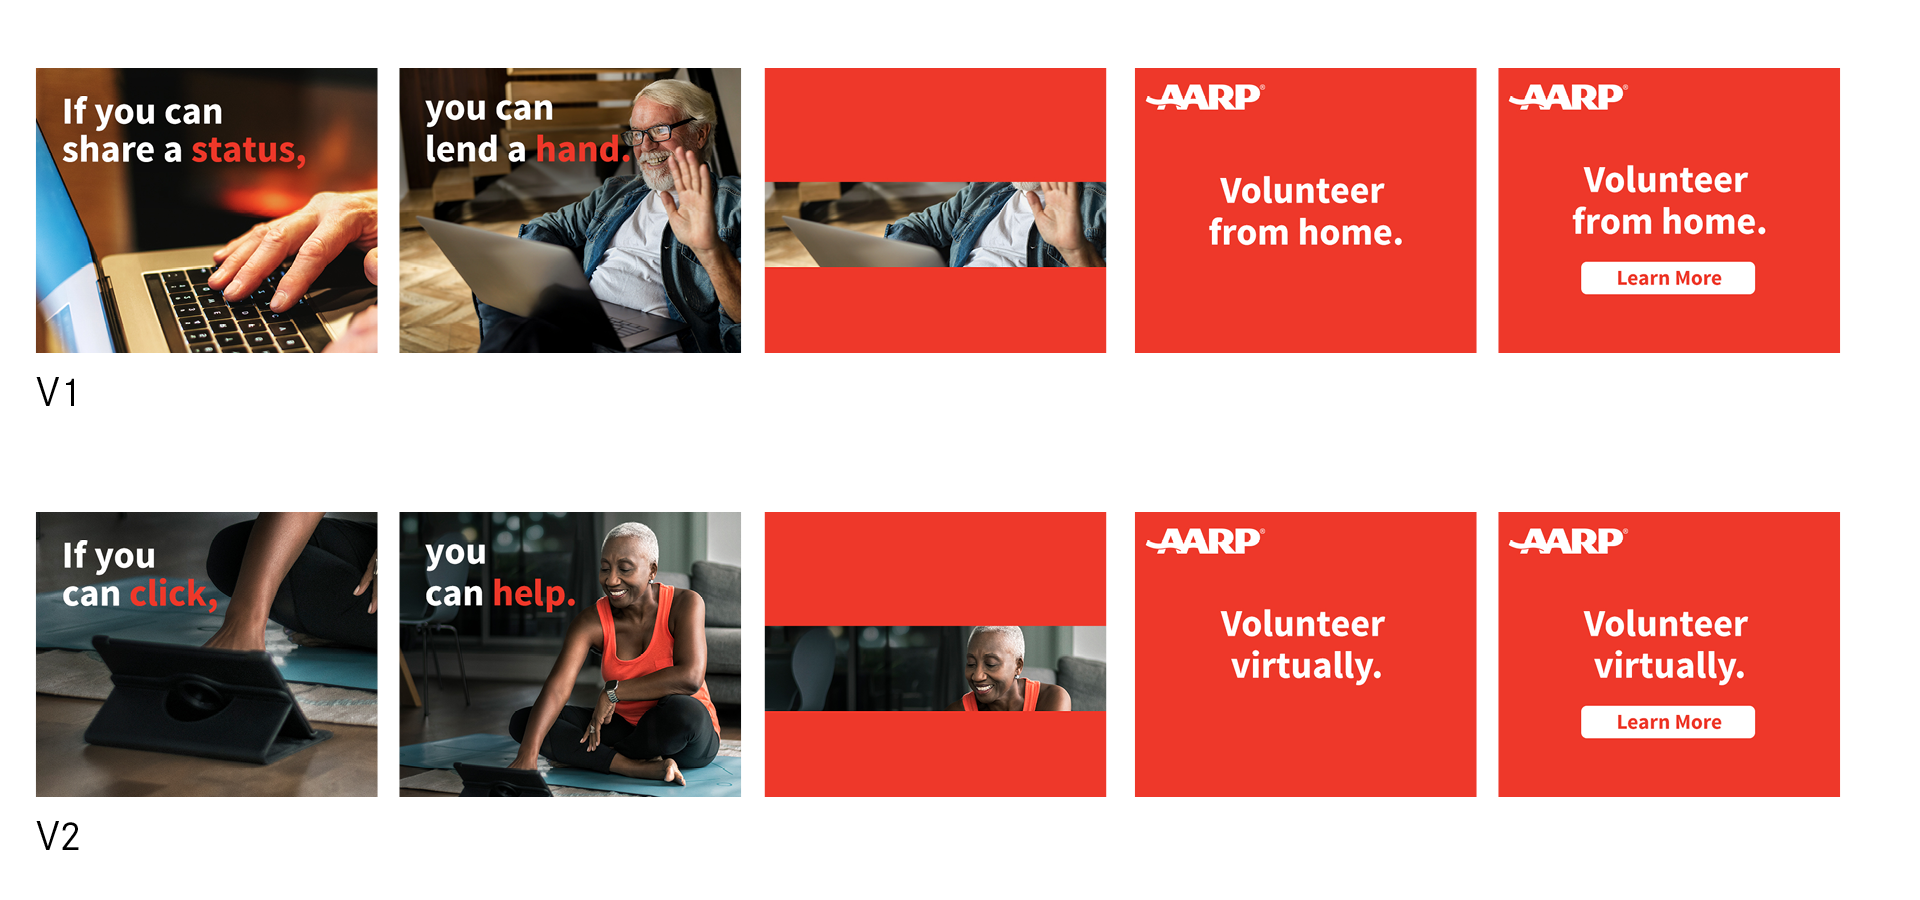 Vega Digital Awards Winner - Virtual Volunteers, AARP